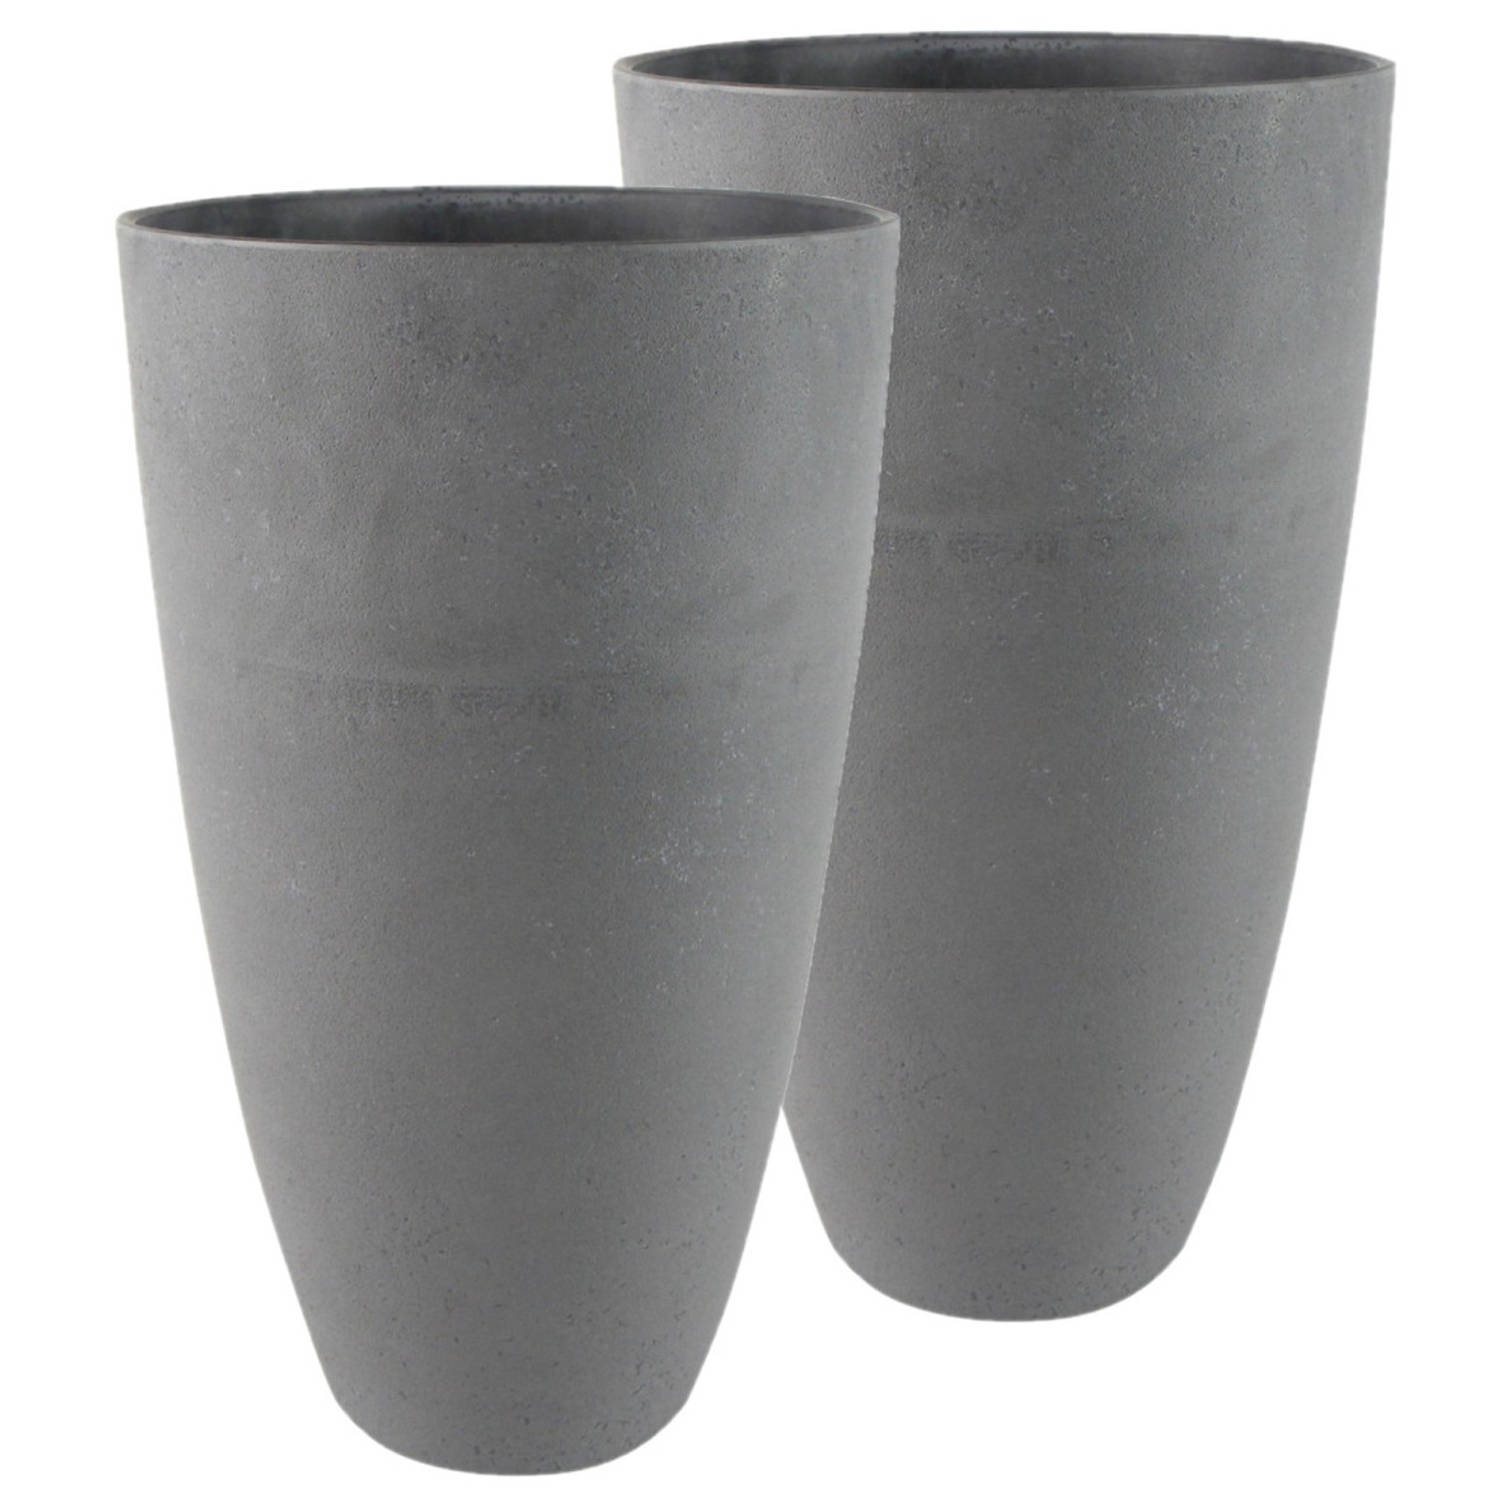 Bloempot/plantenpot vaas van gerecycled donkergrijs D29 en H50 - Plantenpotten | Blokker